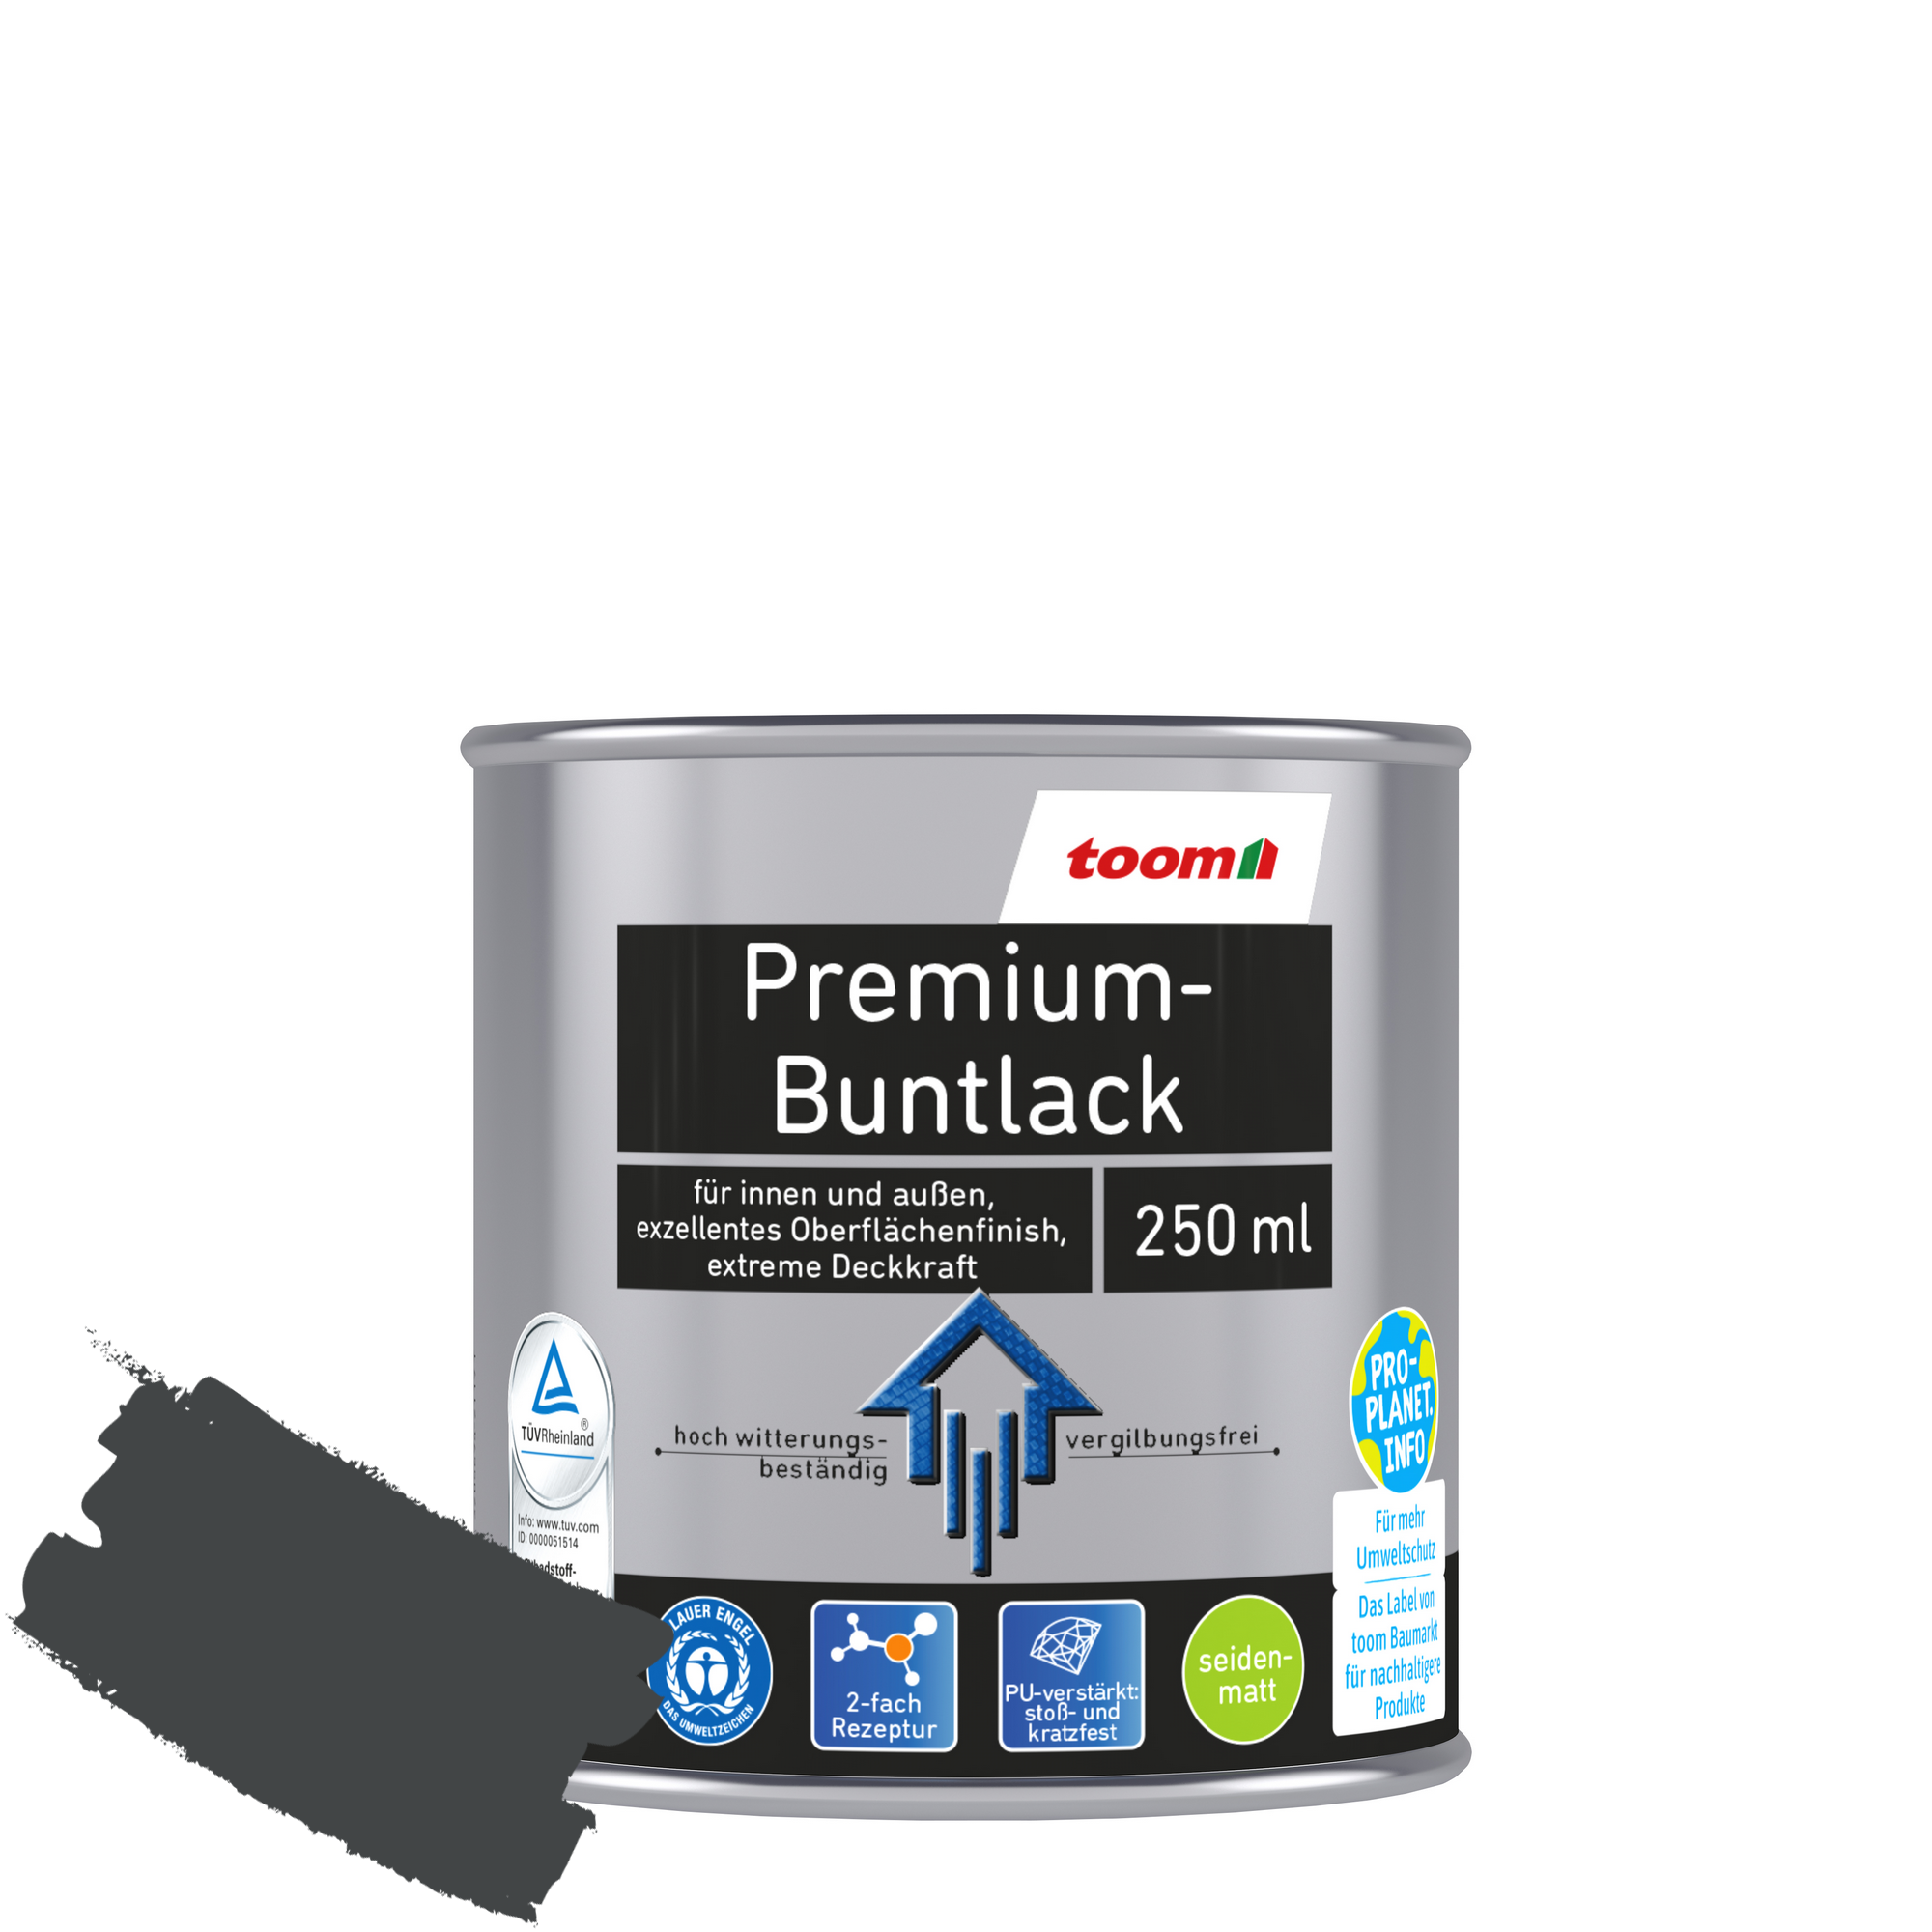 Premium-Buntlack grau seidenmatt 250 ml + product picture